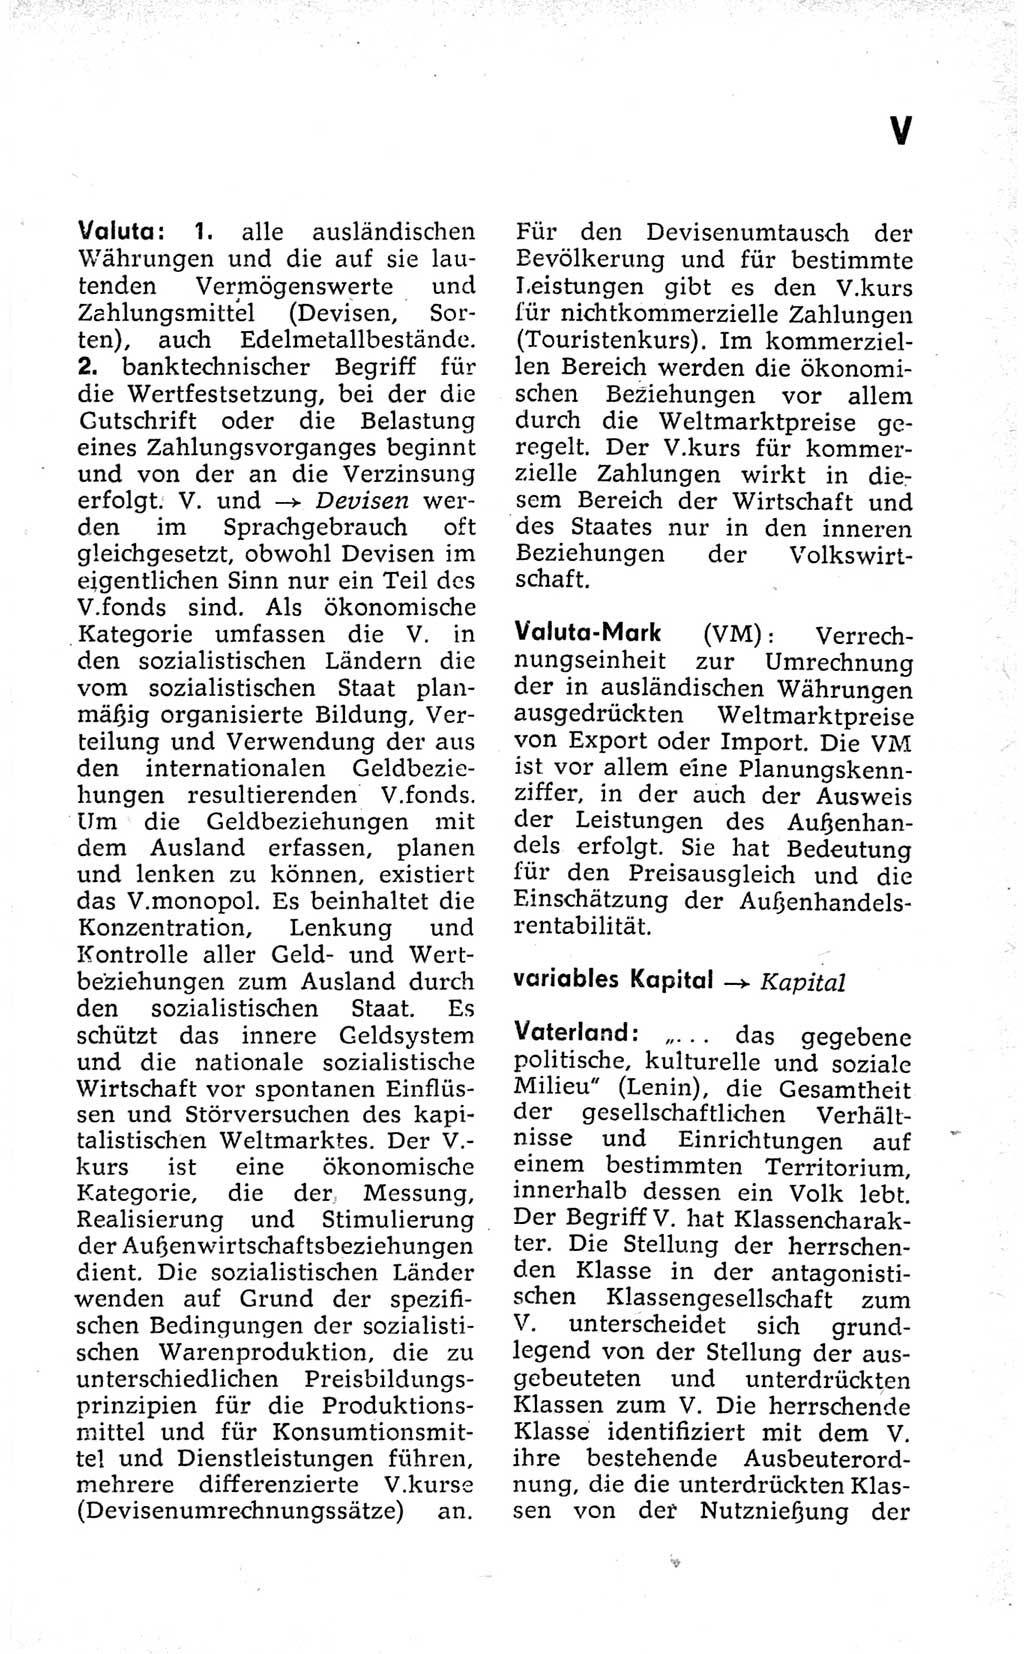 Kleines politisches Wörterbuch [Deutsche Demokratische Republik (DDR)] 1973, Seite 871 (Kl. pol. Wb. DDR 1973, S. 871)